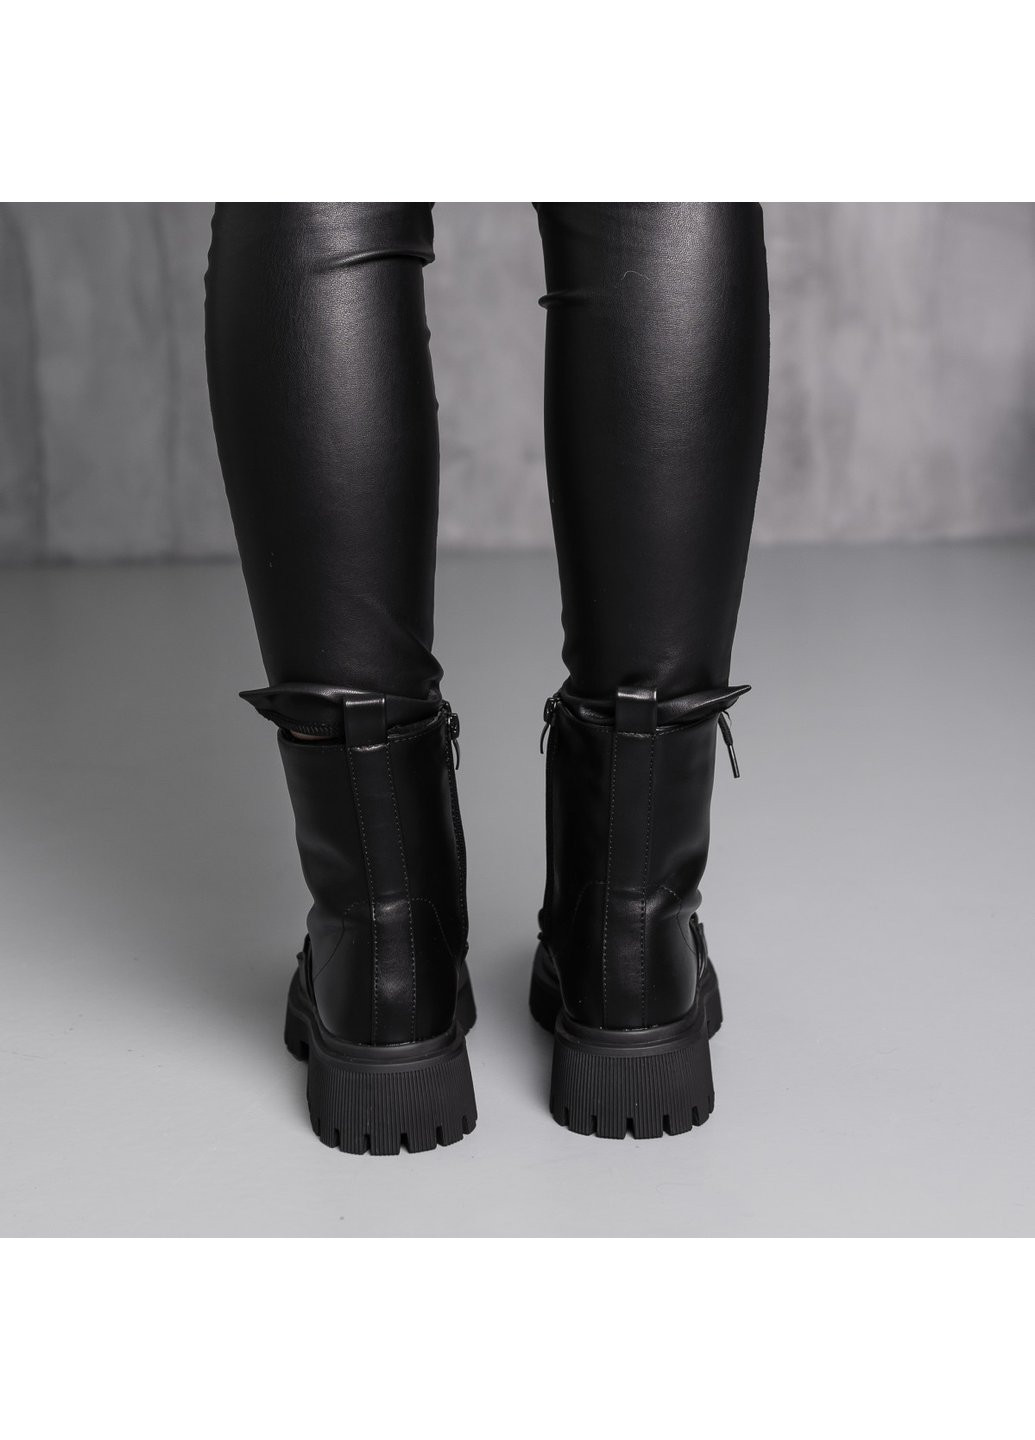 Зимние ботинки женские зимние echo 3889 235 черный Fashion из искусственной кожи